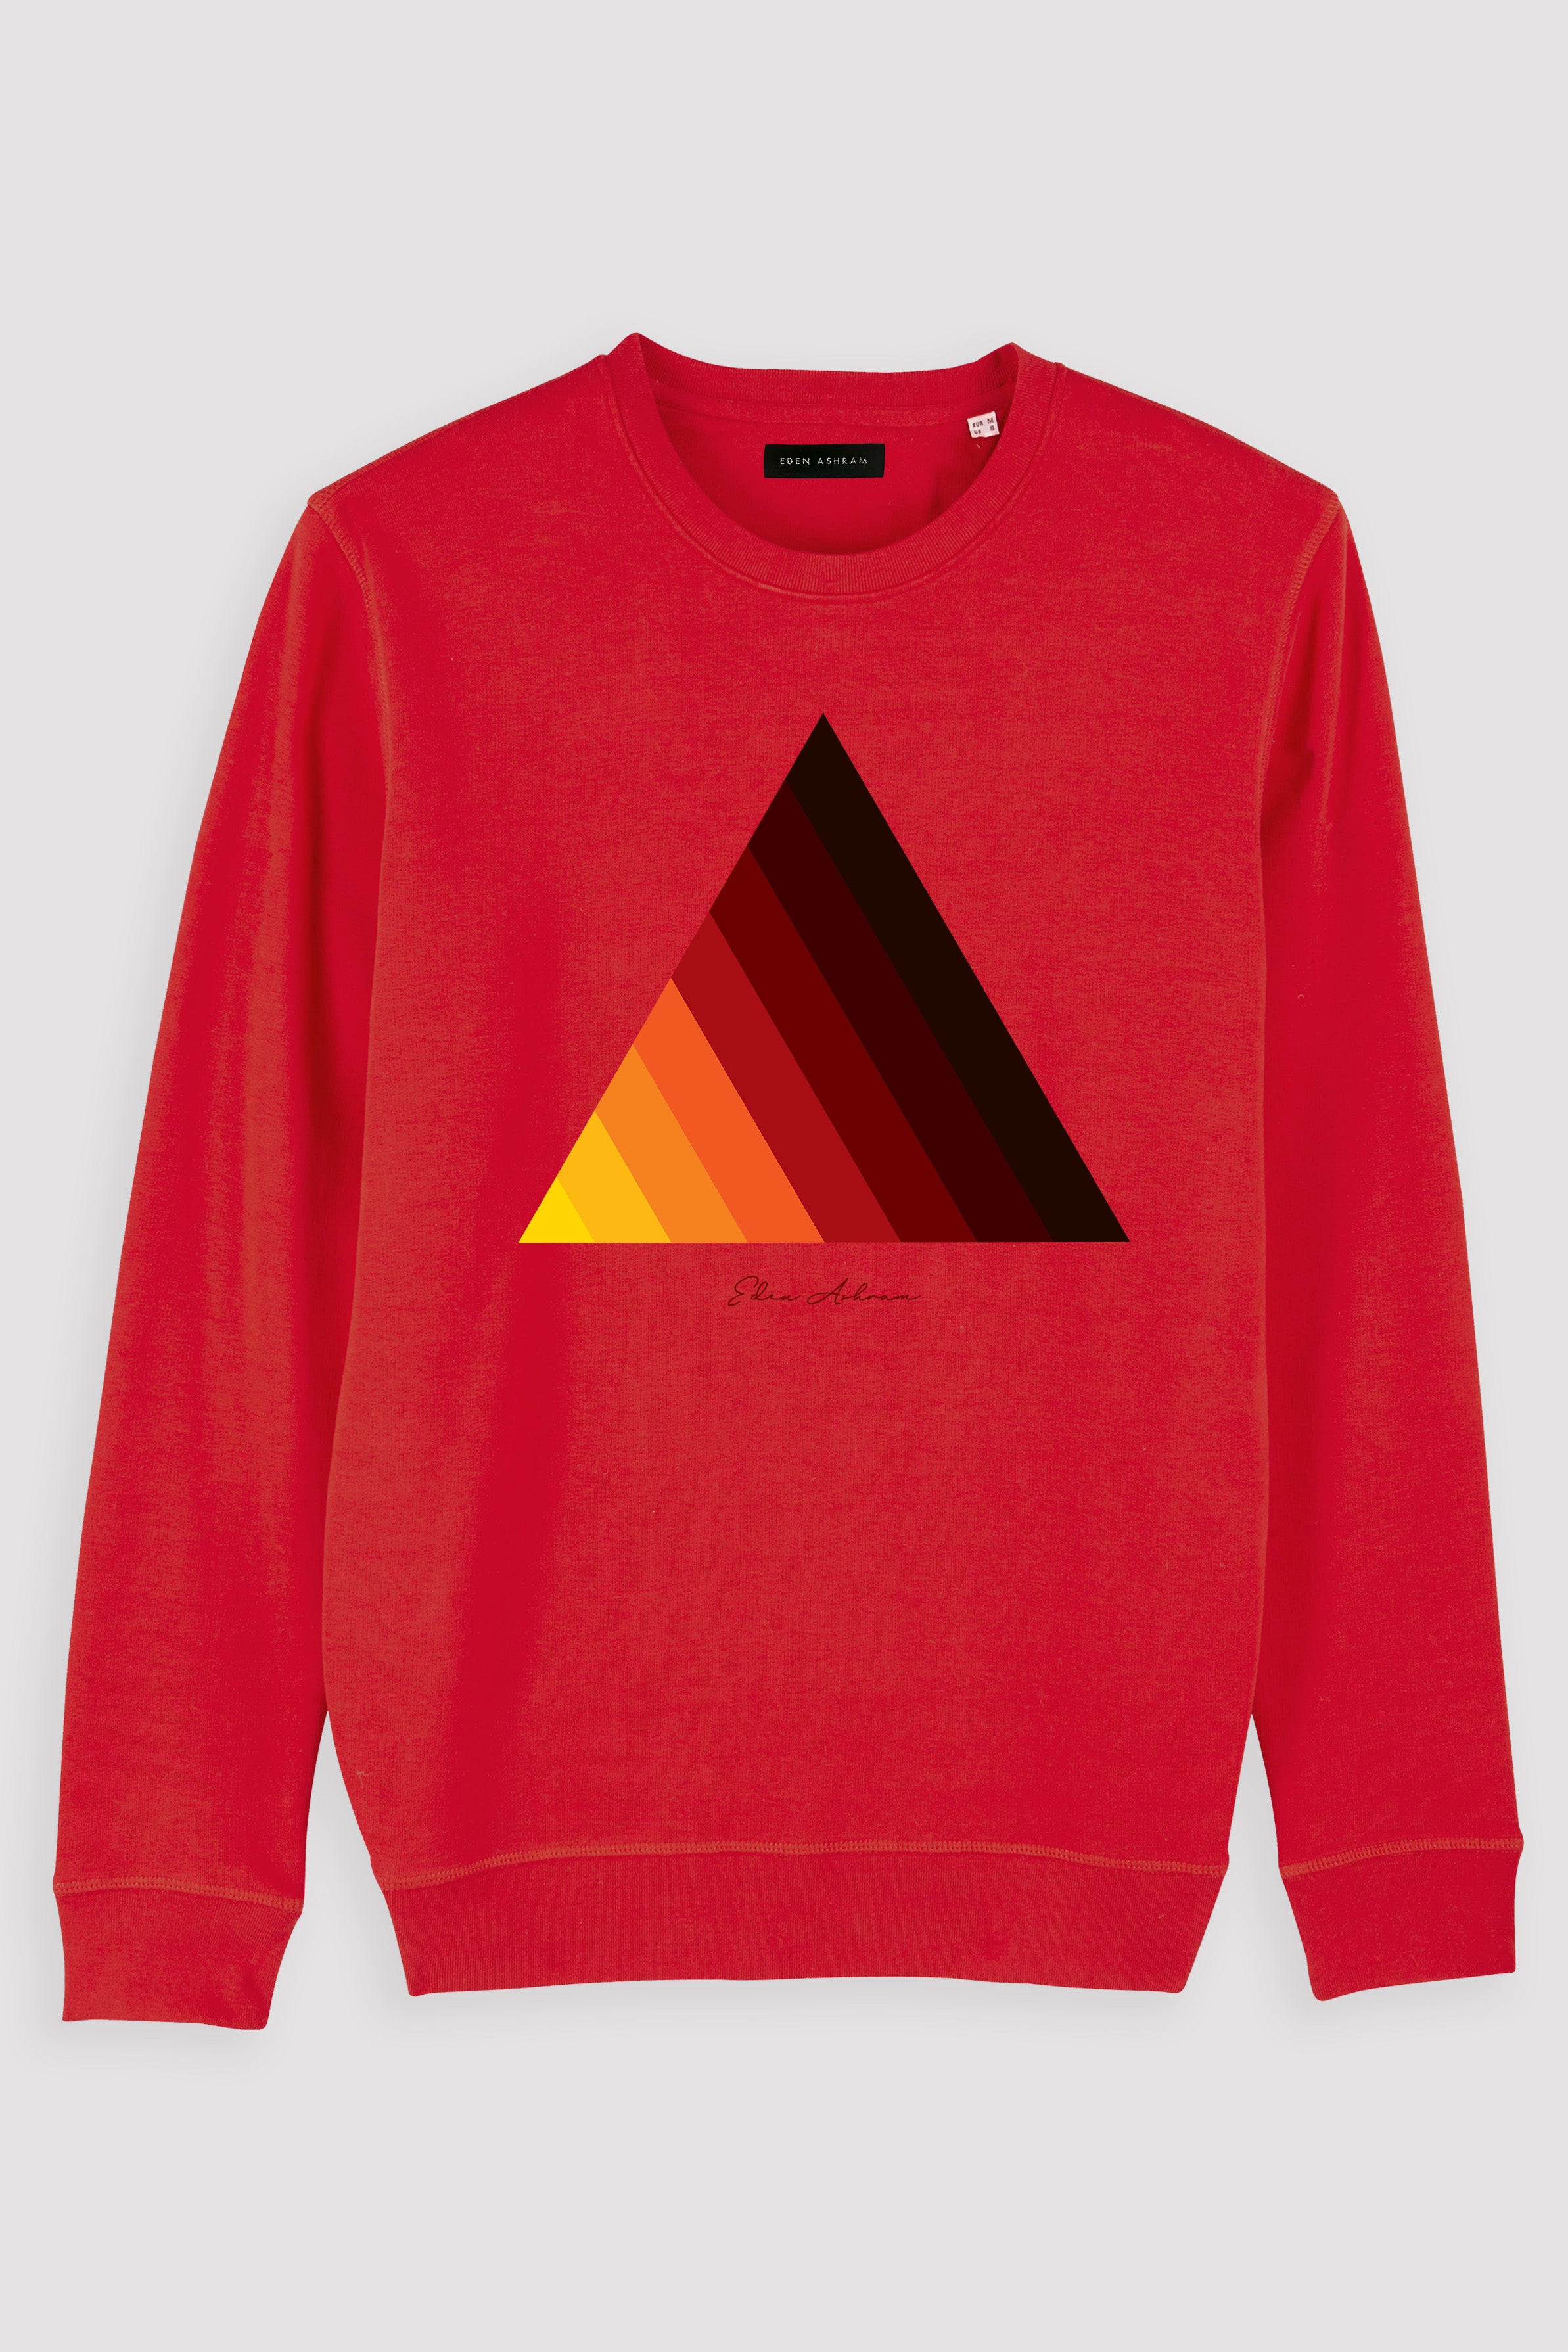 EDEN ASHRAM Retro Pyramid Premium Crew Neck Sweatshirt Red